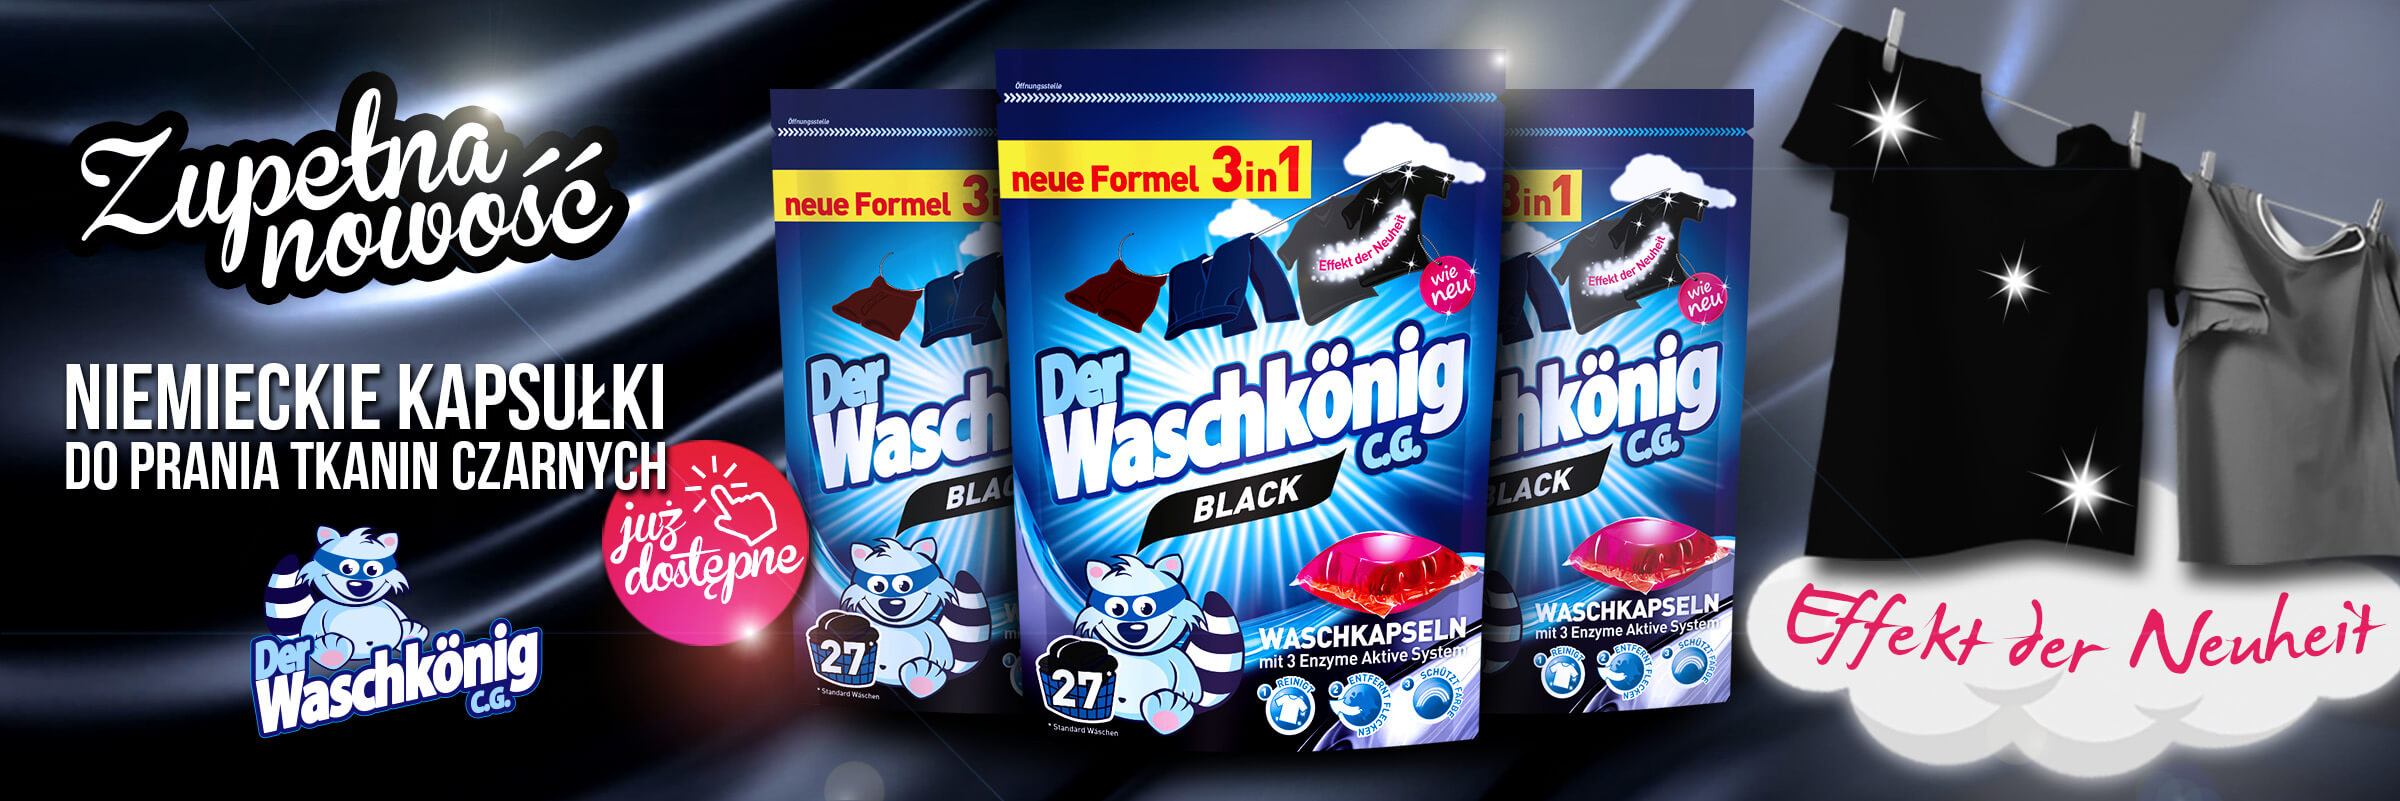 Najnowszy produkt marki Waschkonig już dostępny w sprzedaży!